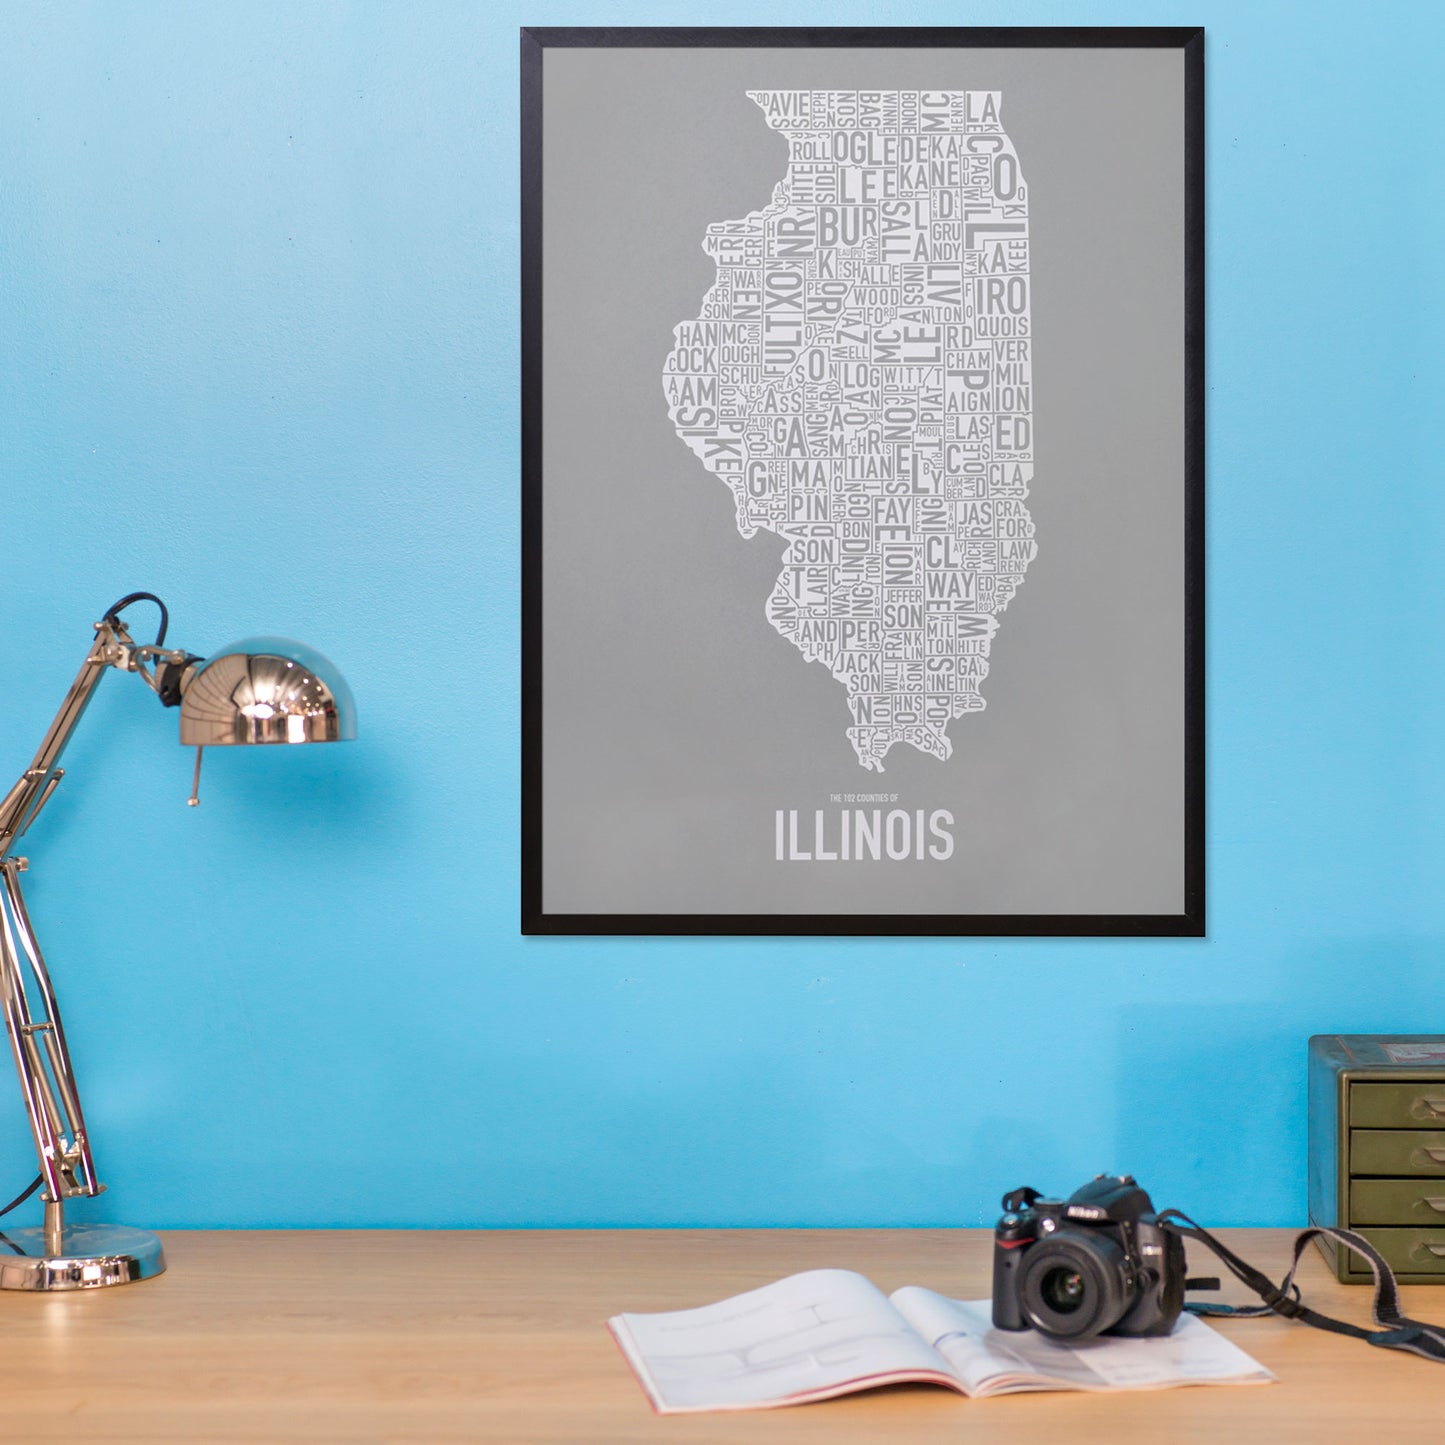 Illinois Typographic County Map 18" x 24" Screen Print